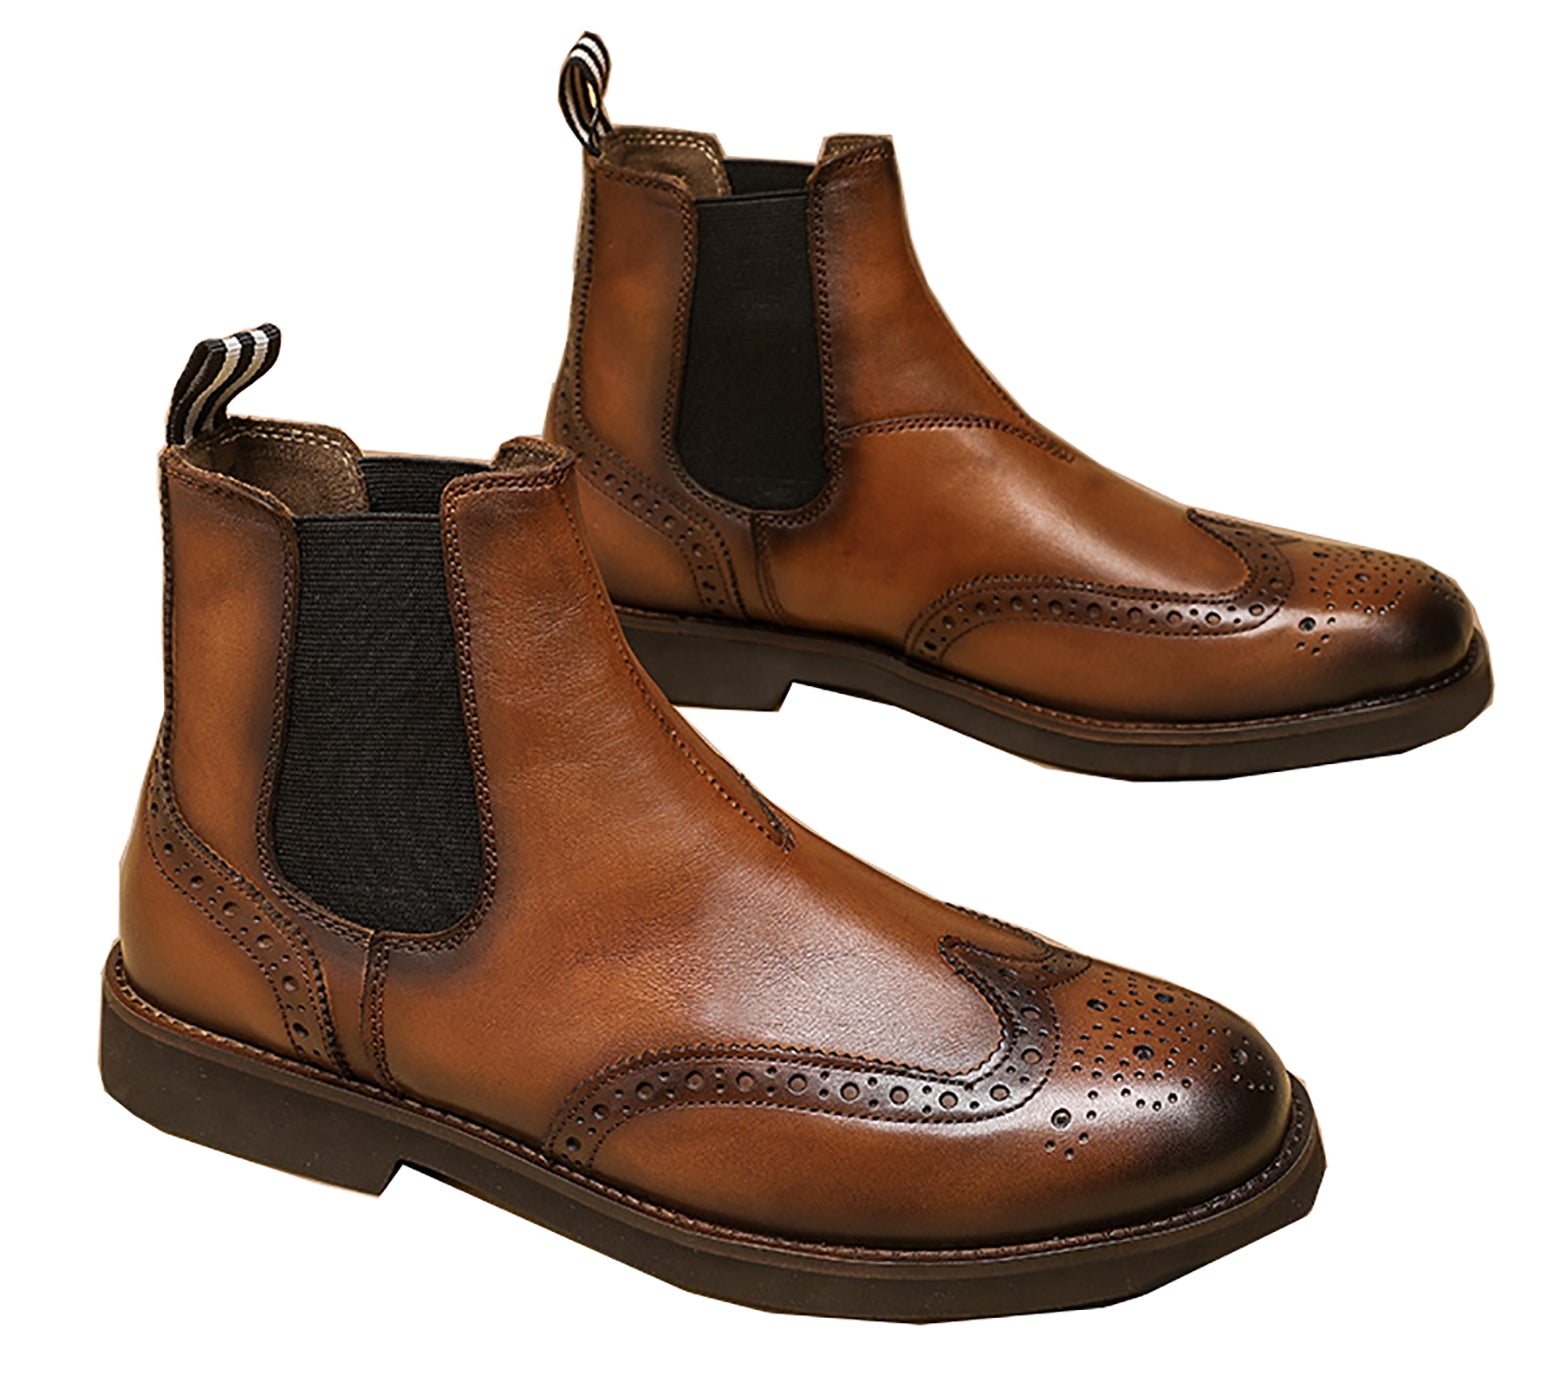 Men's Genuine Handmade Wingtips Brogues Chelsea Boots